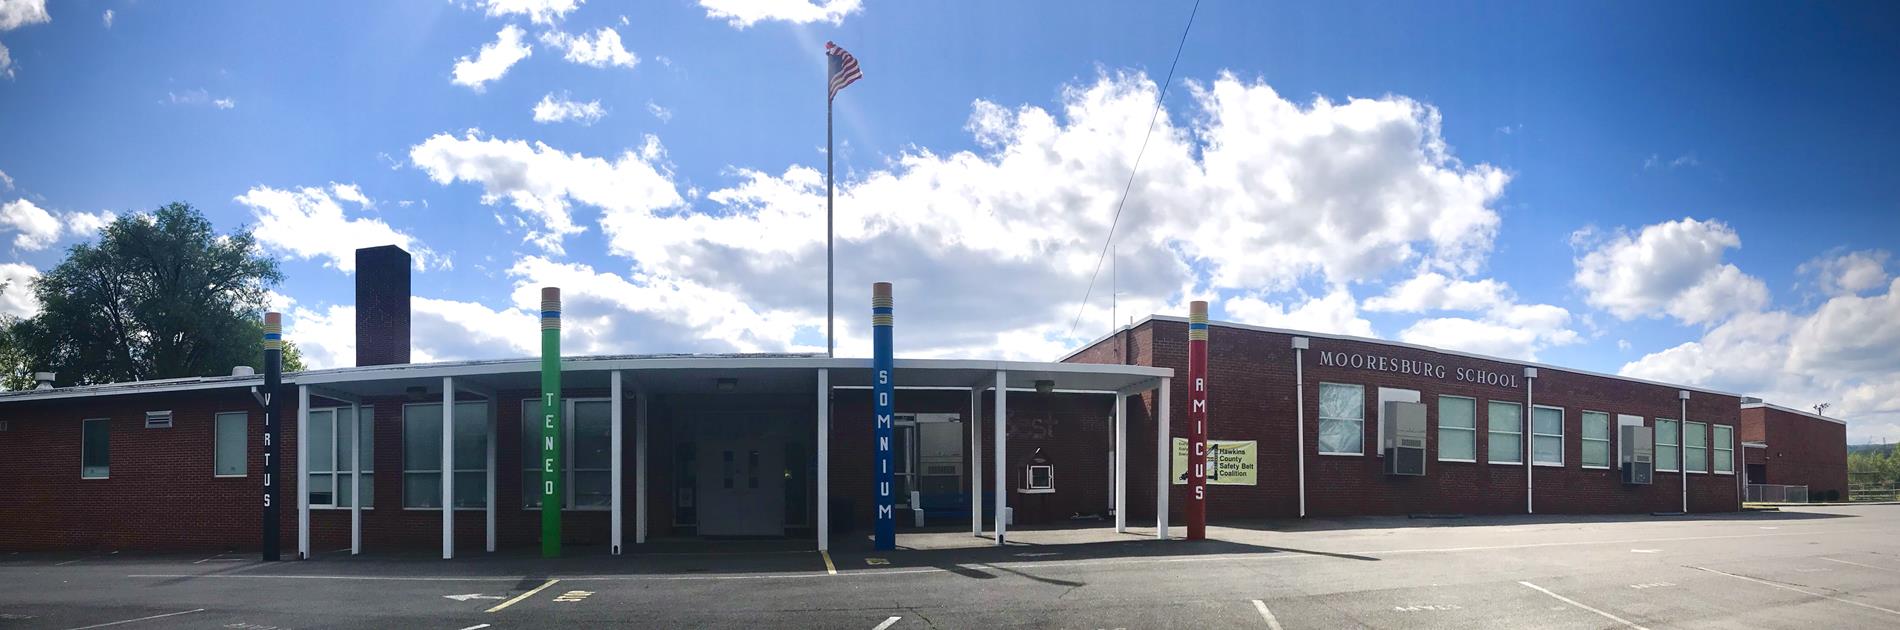 mooresburg elementary school building